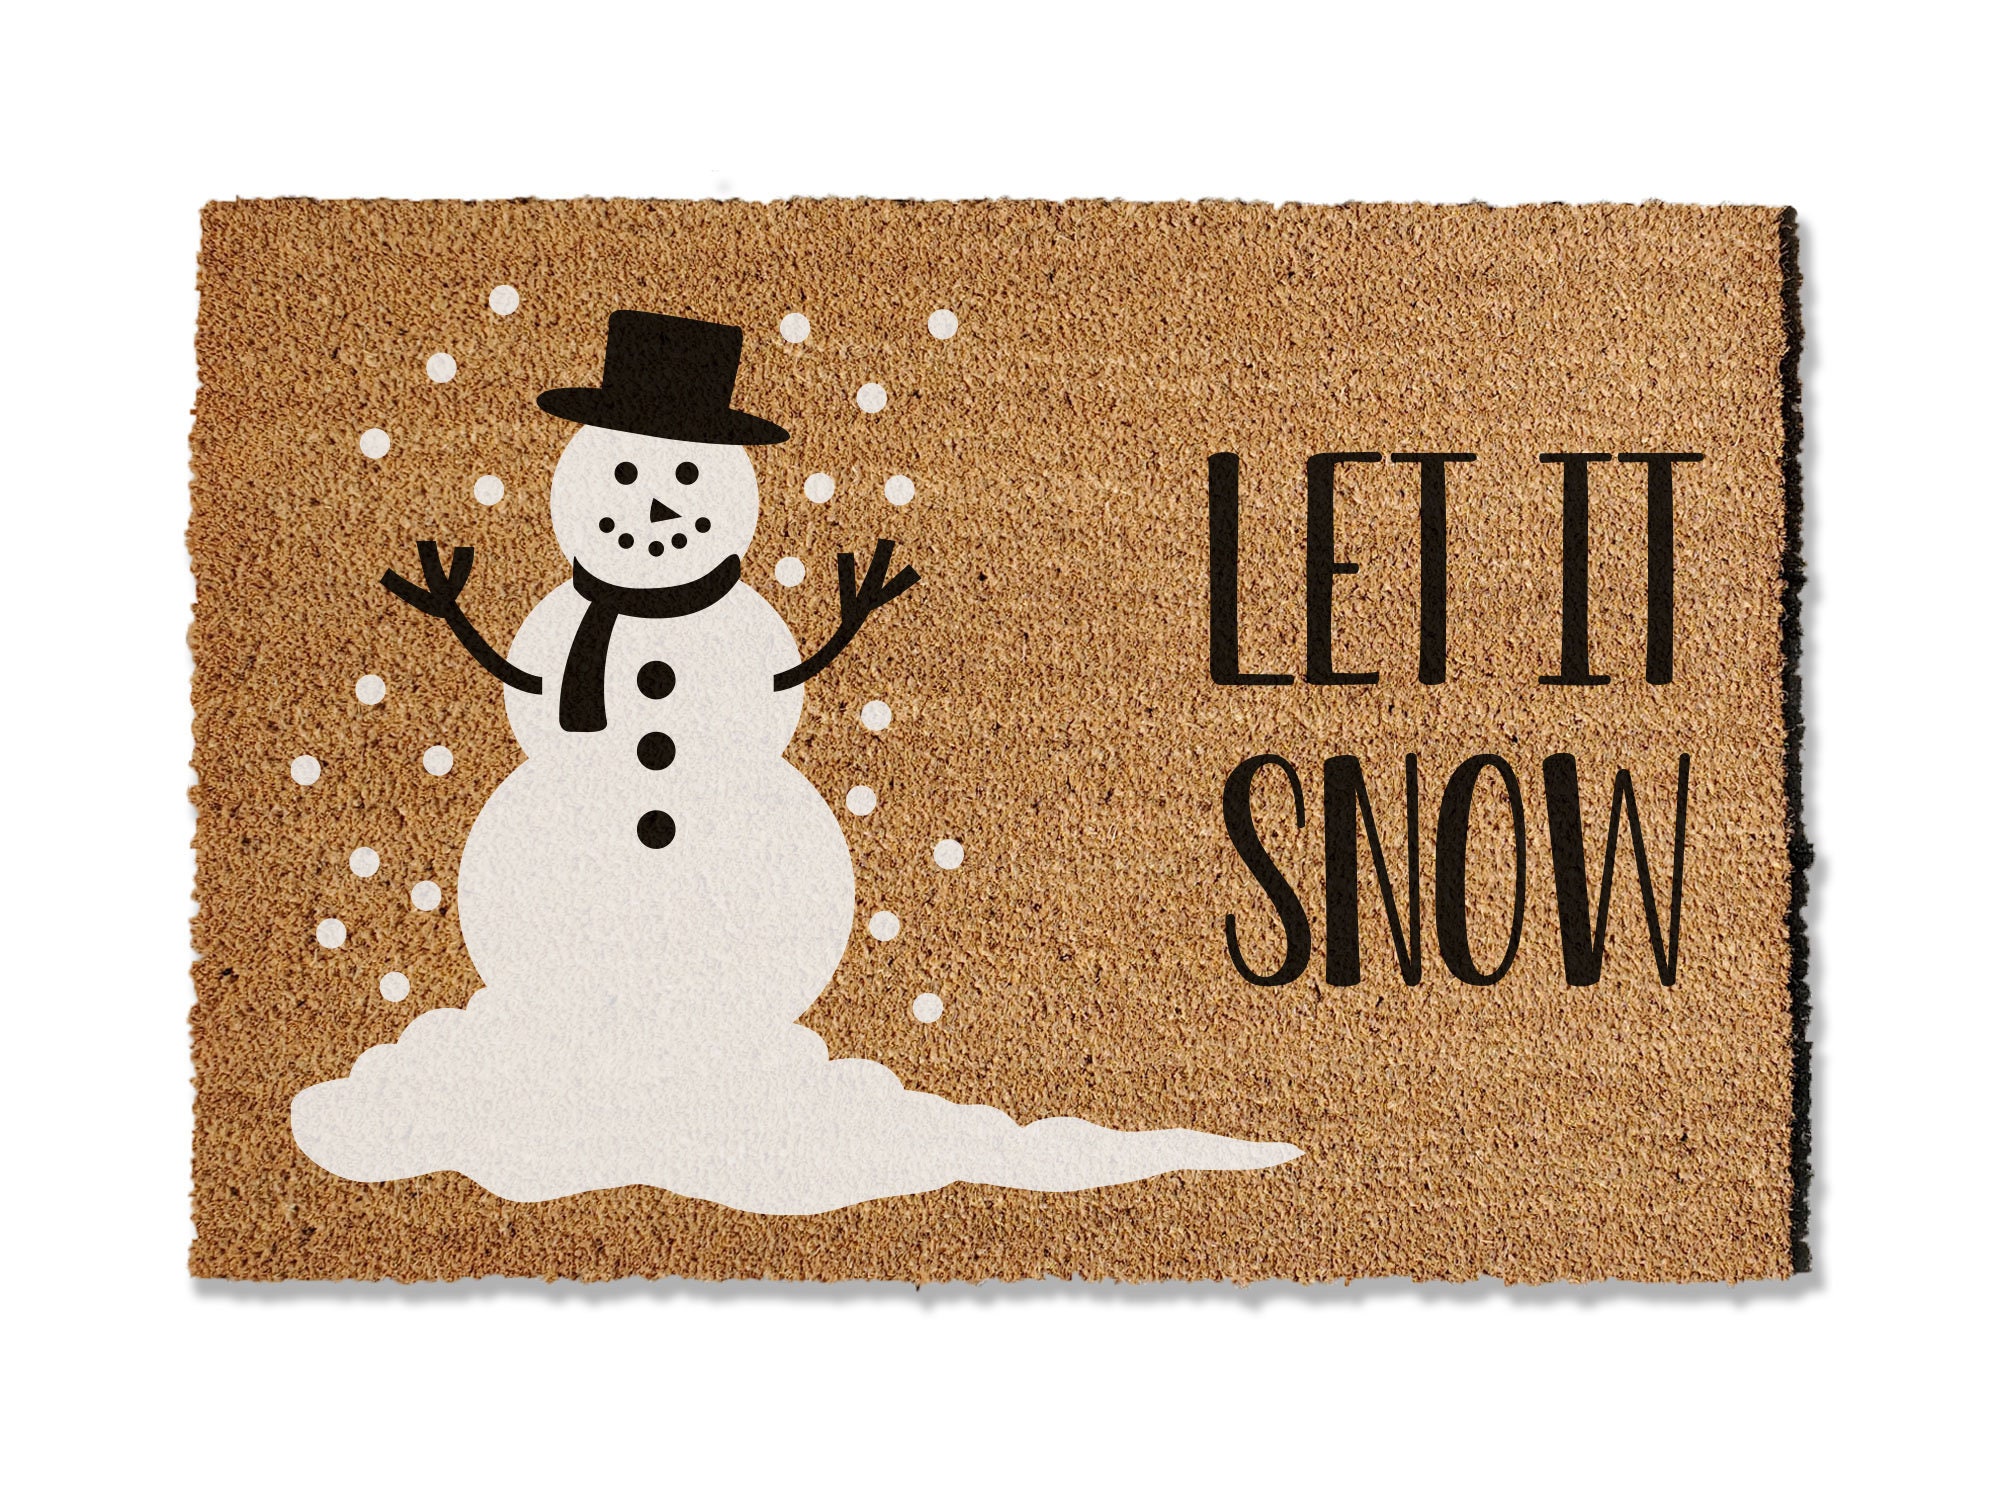 Winter Decorative Doormats Creative Snowman Holiday Welcome Floor